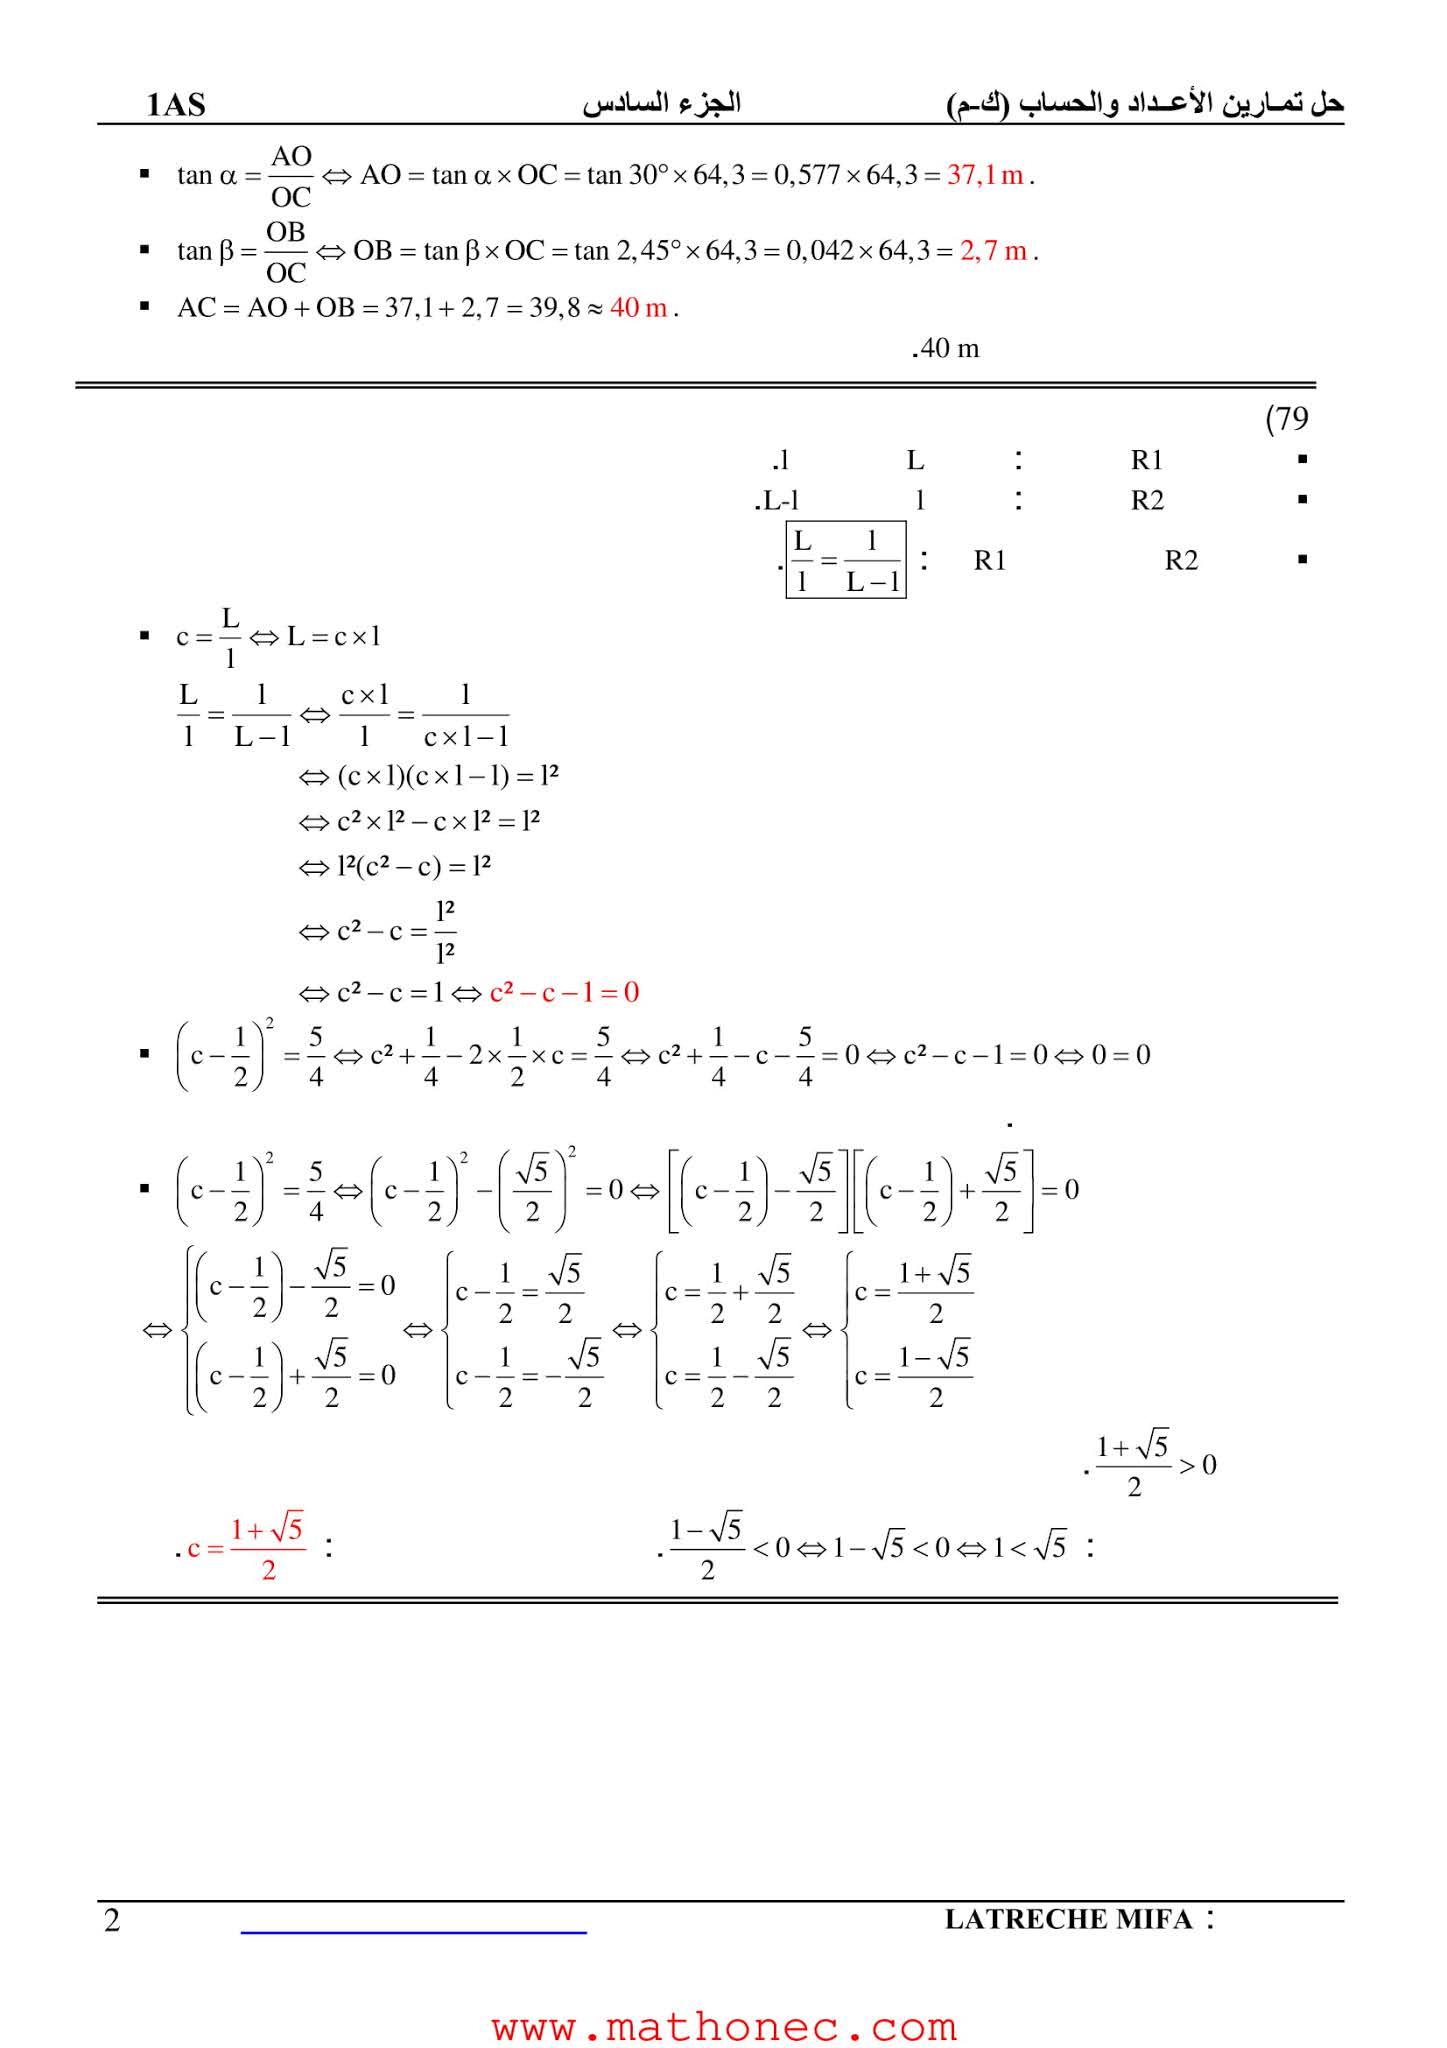 حل تمارين كتاب الرياضيات 1 ثانوي علمي صفحة 23